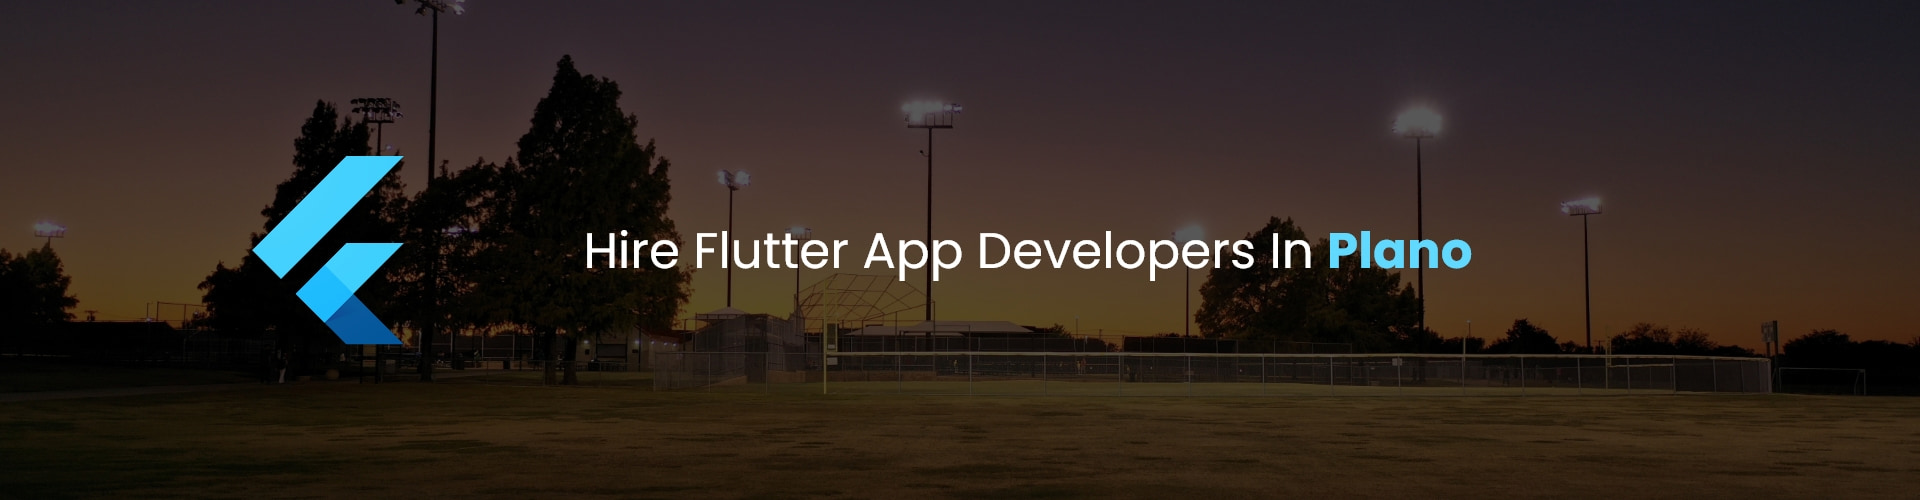 flutter app developers in plano